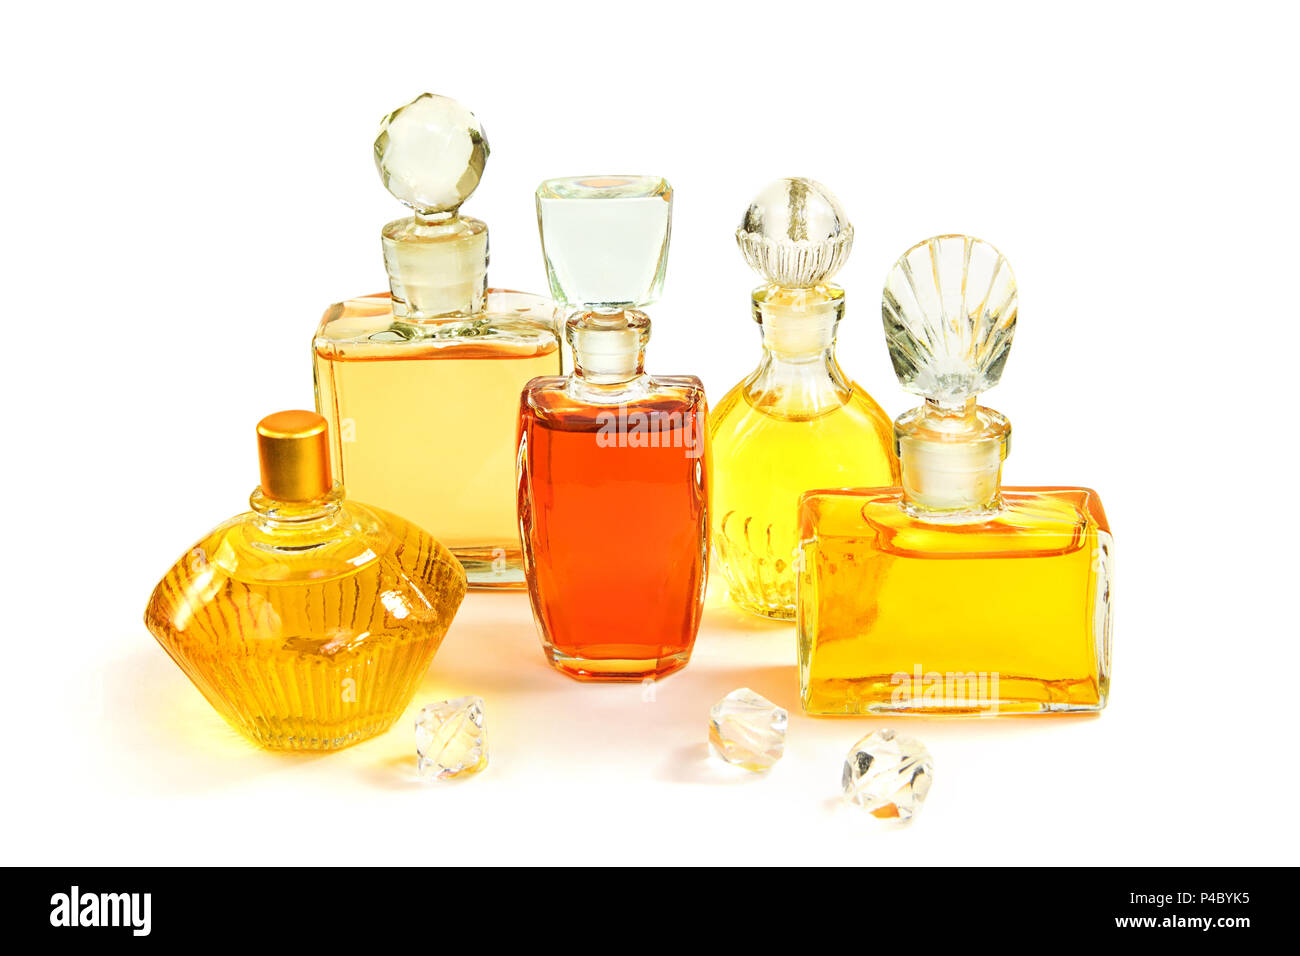 Vintage bottles of perfume isolated on white background Stock Photo